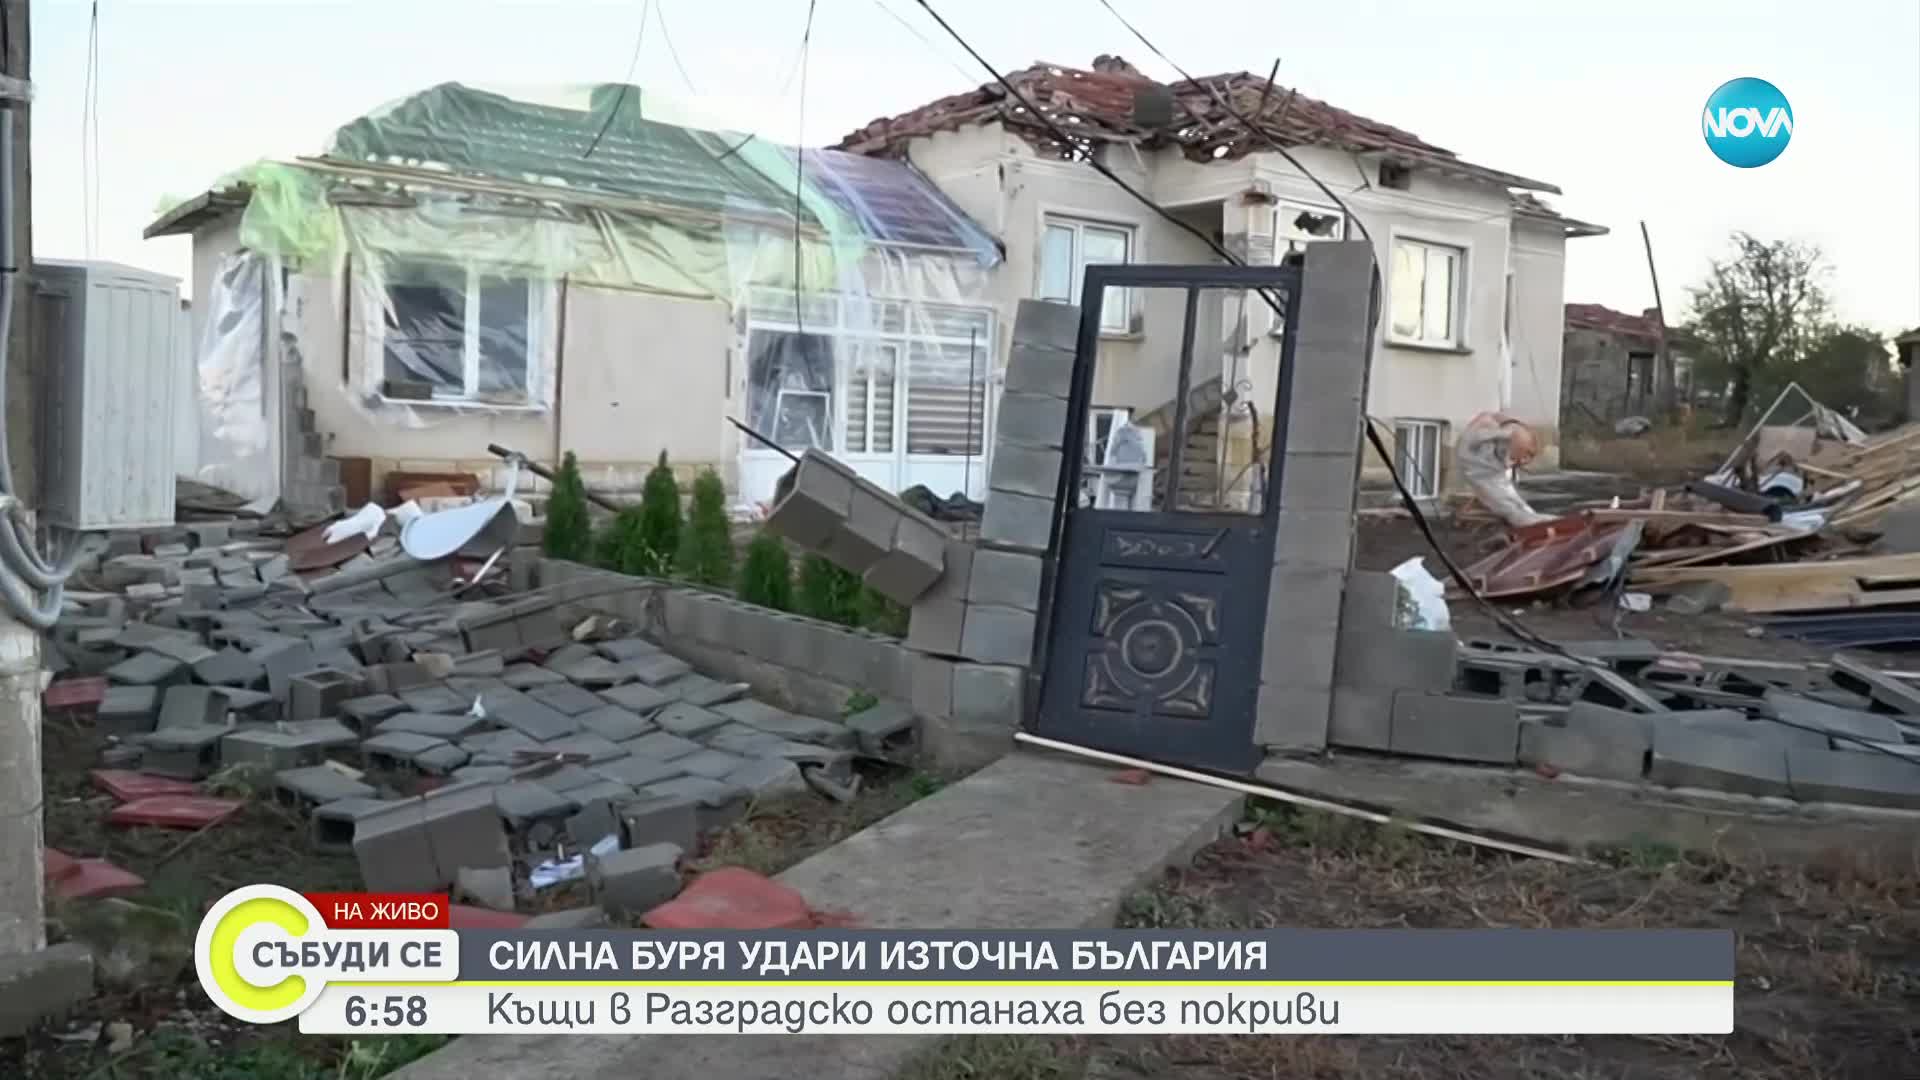 Силна буря удари Източна България: Комисия описва щетите в село Лъвино